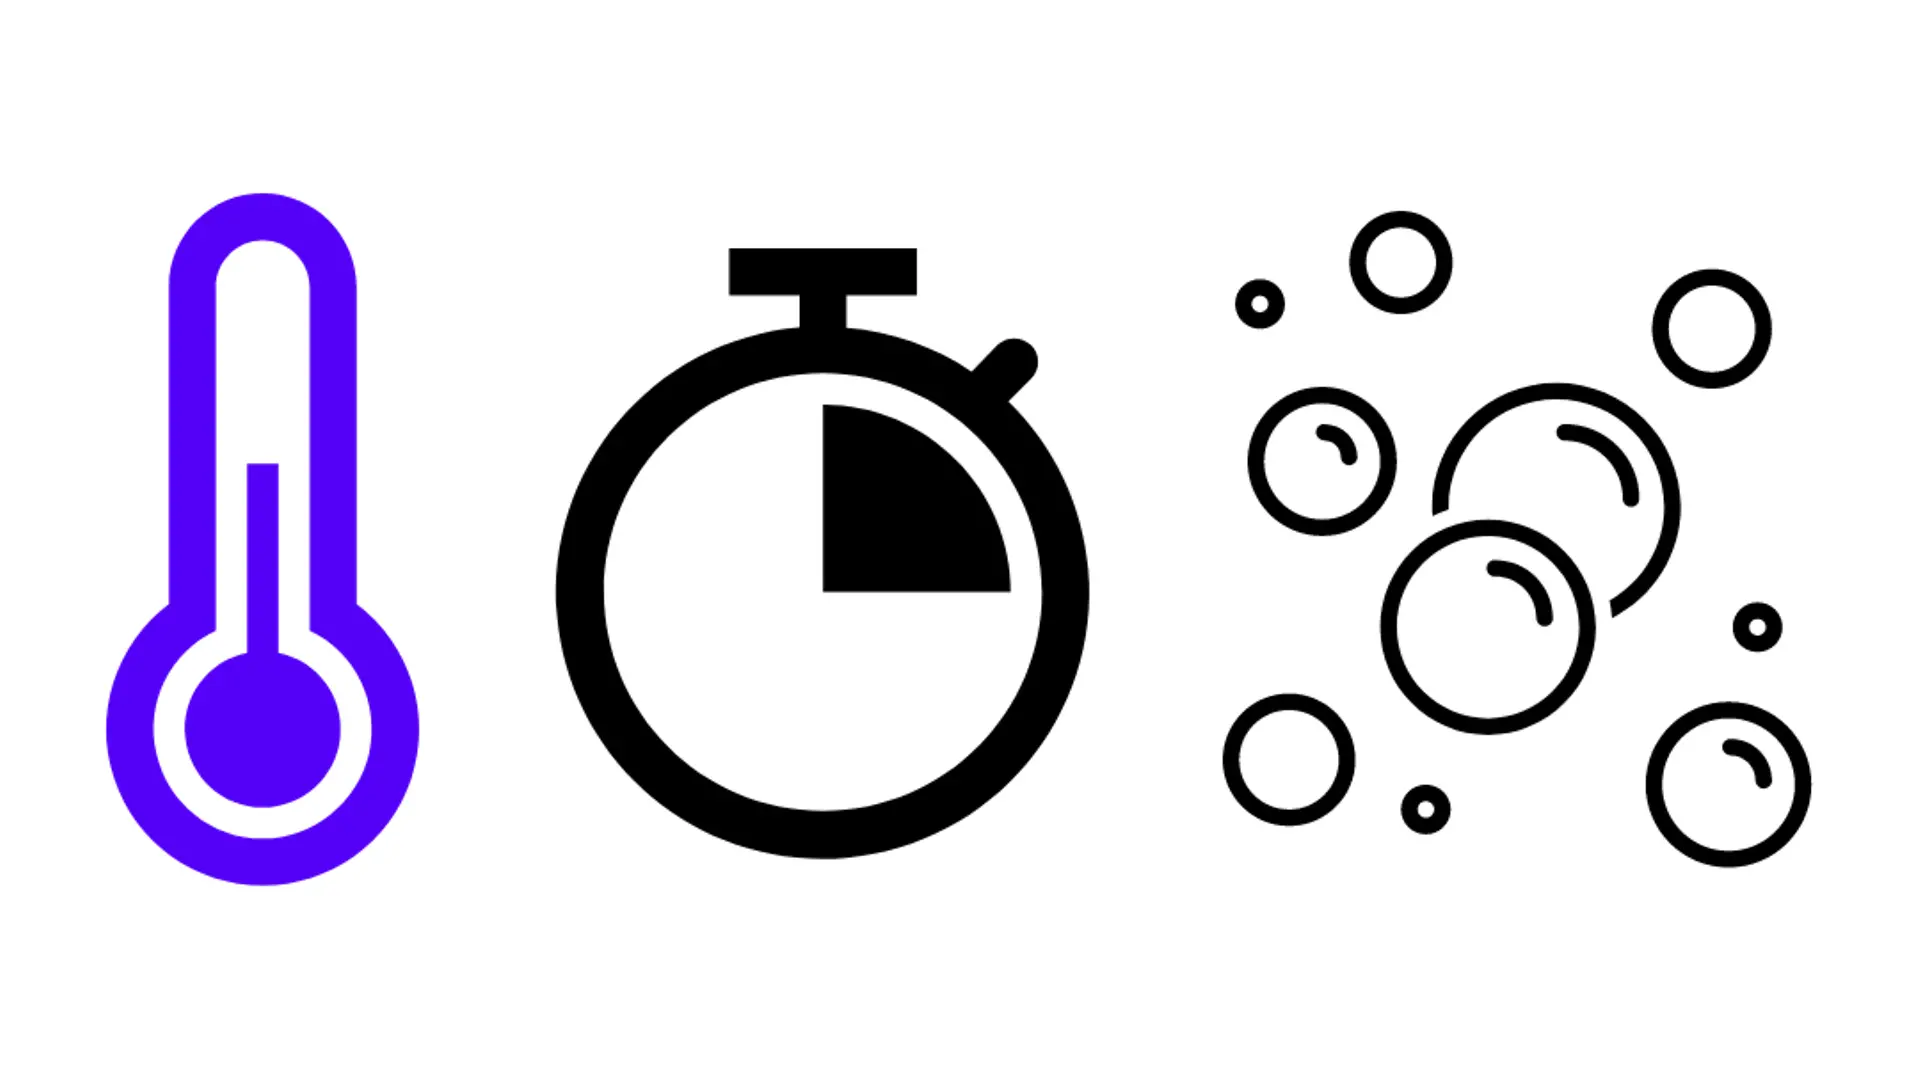 símbolo azul para termômetro, símbolo de relógio, quarto de hora e símbolo de espuma